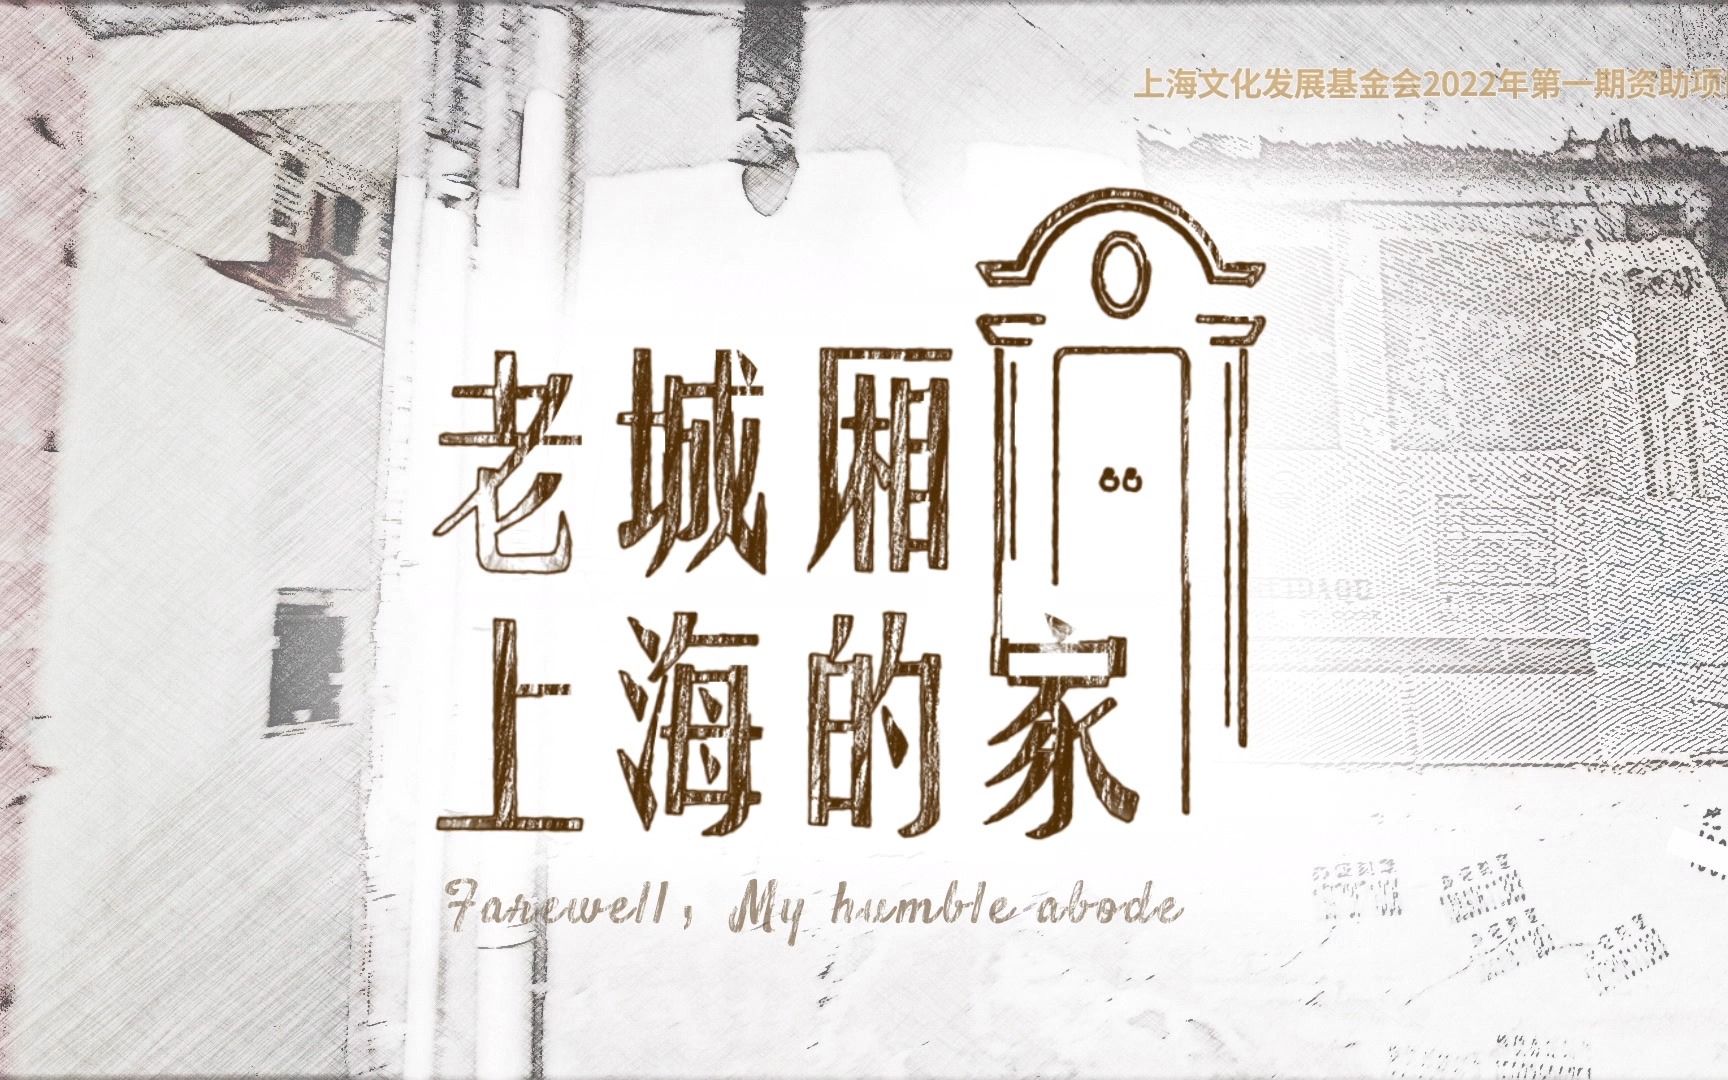 纪录片《老城厢上海的家》